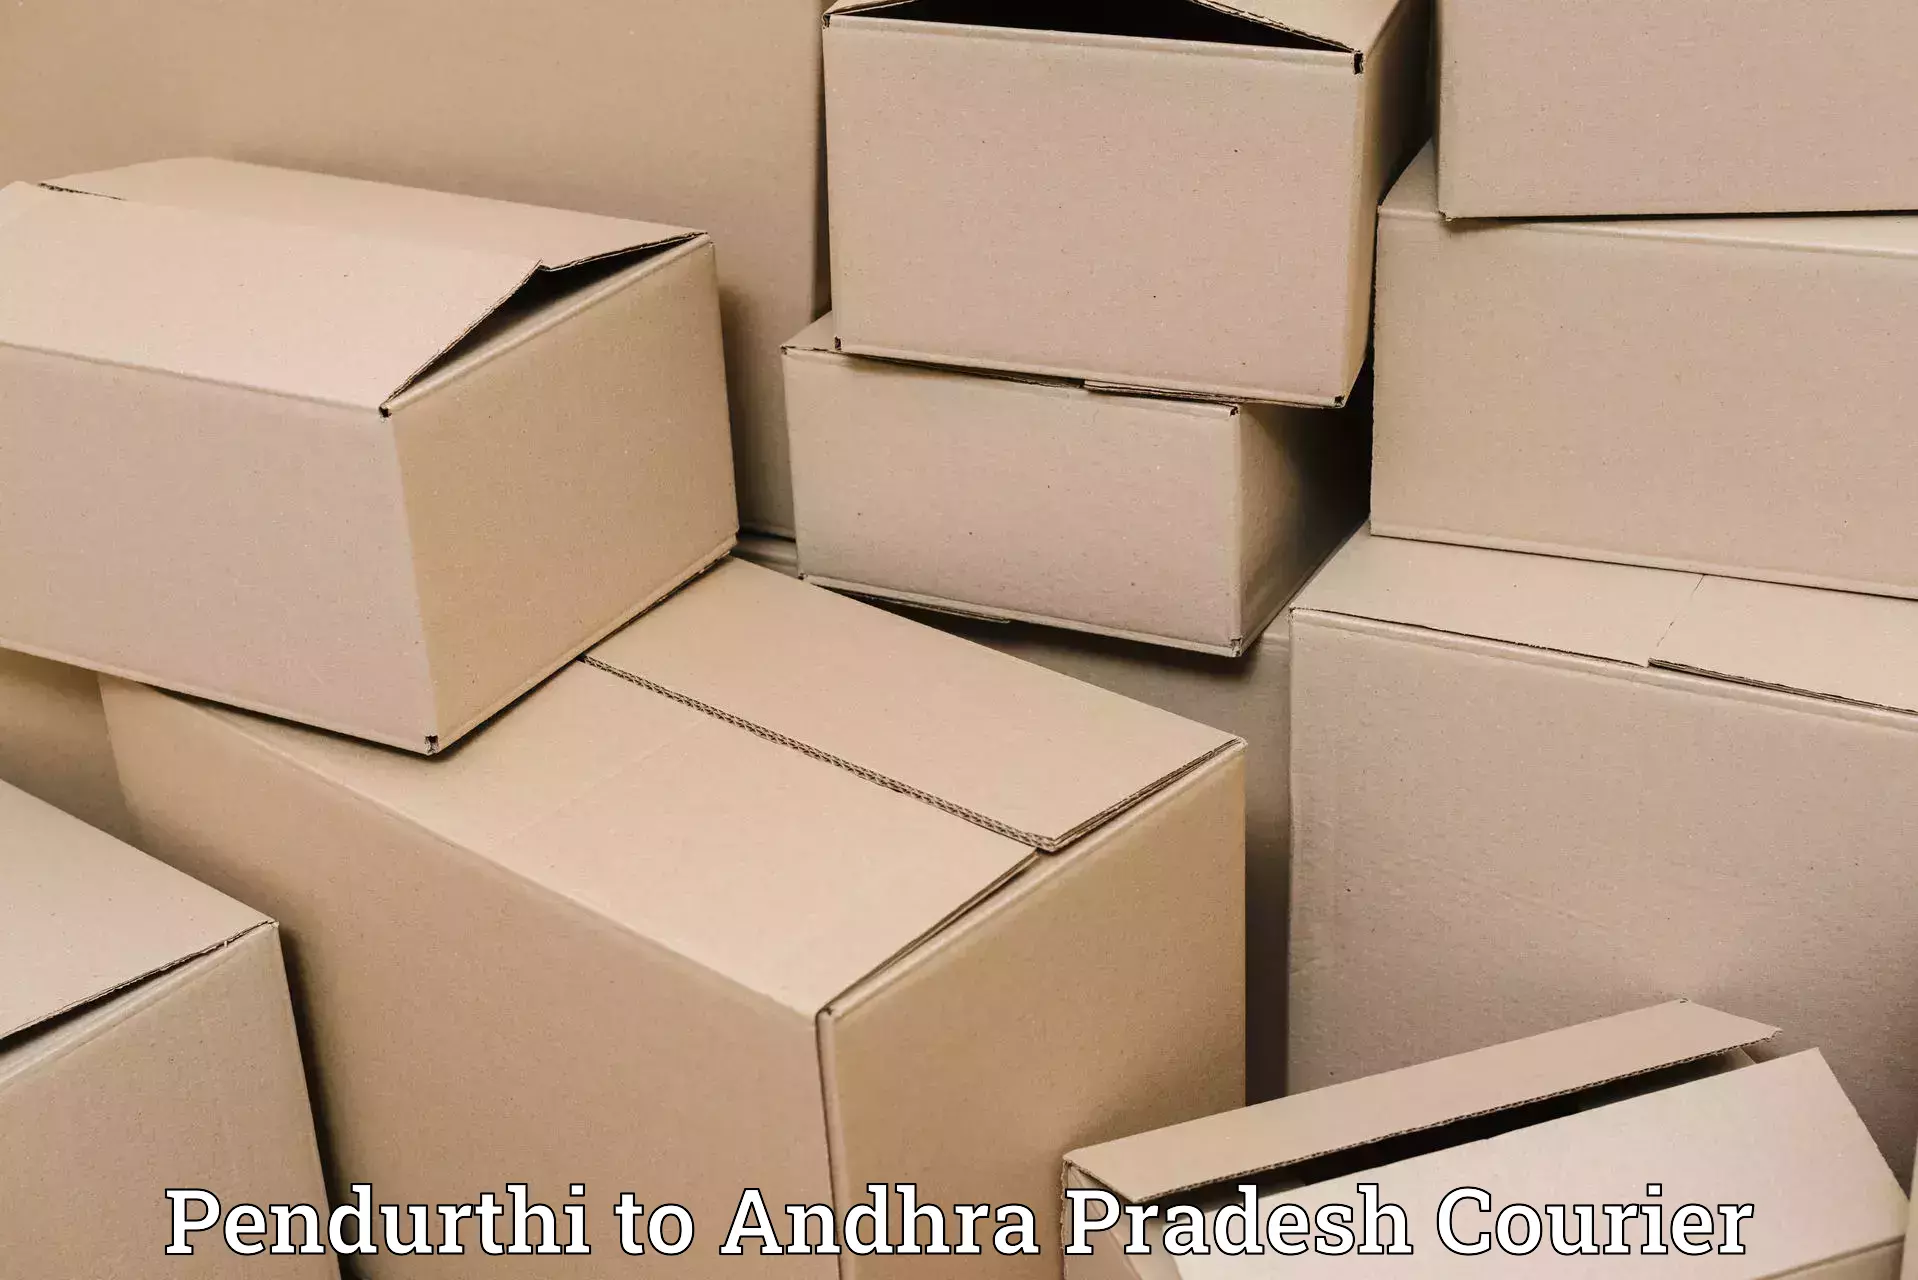 Optimized courier strategies Pendurthi to Puttaparthi